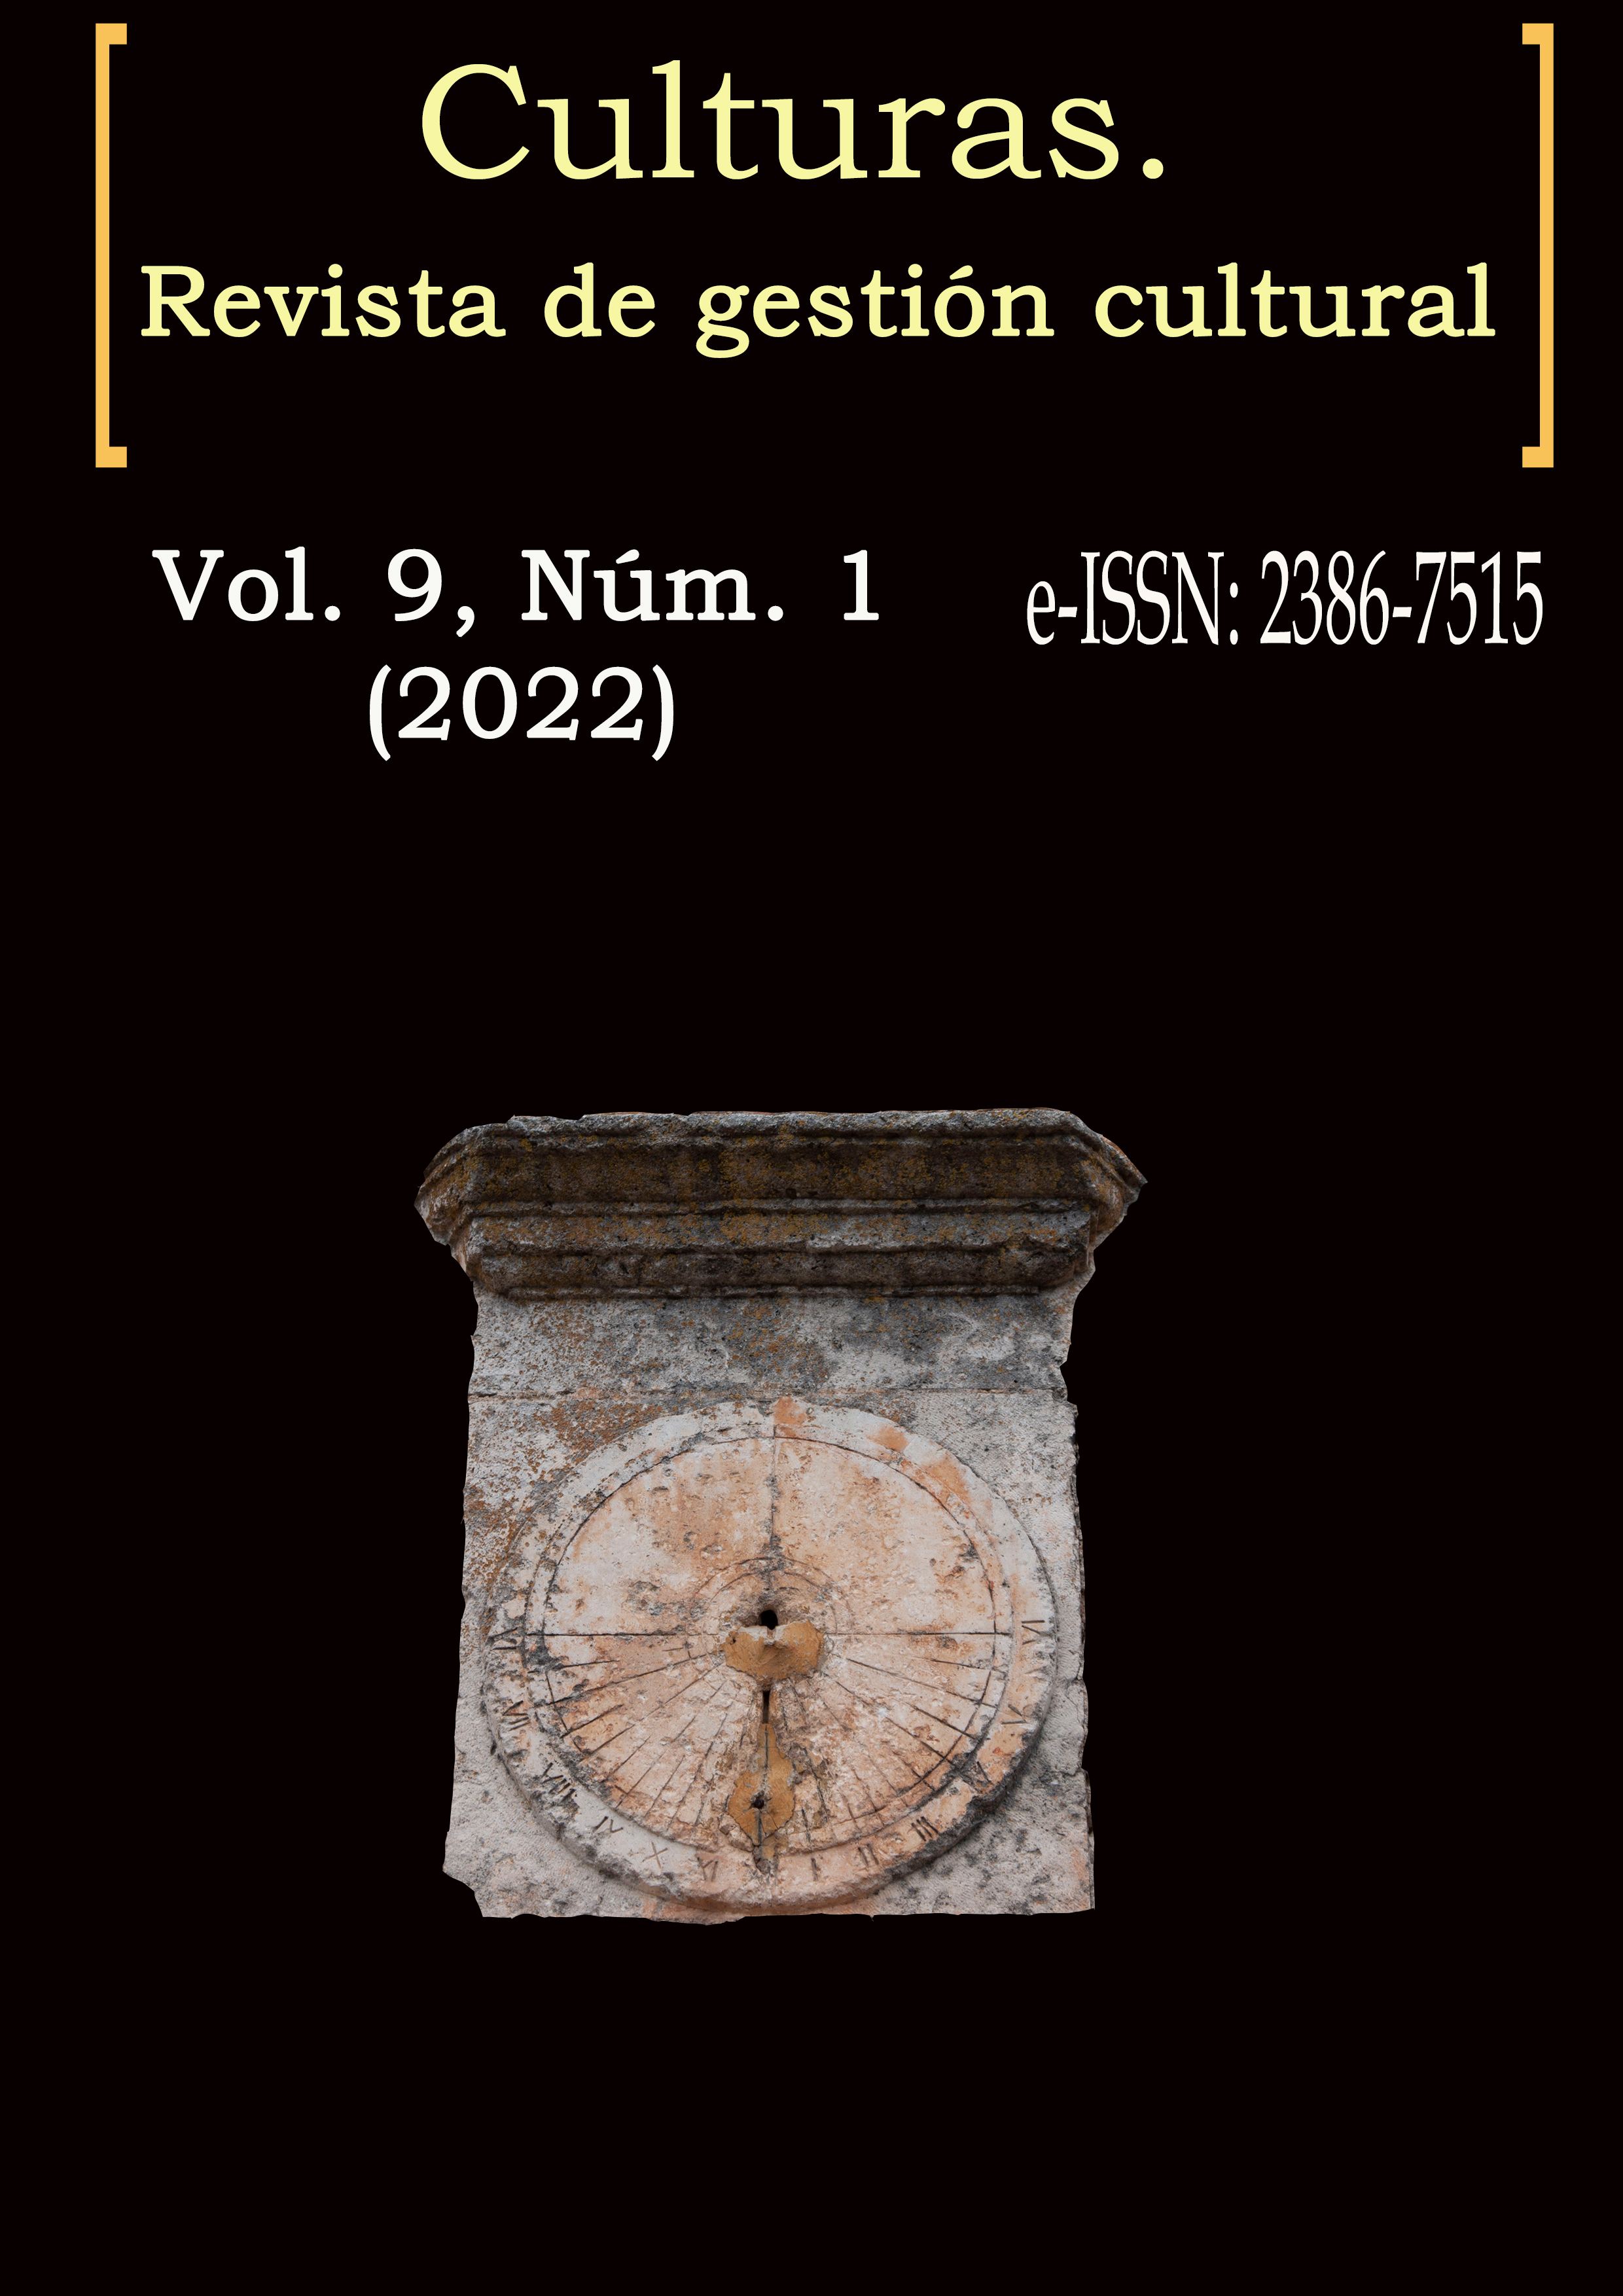 Culturas Vol. 9, Núm. 1 (2022)